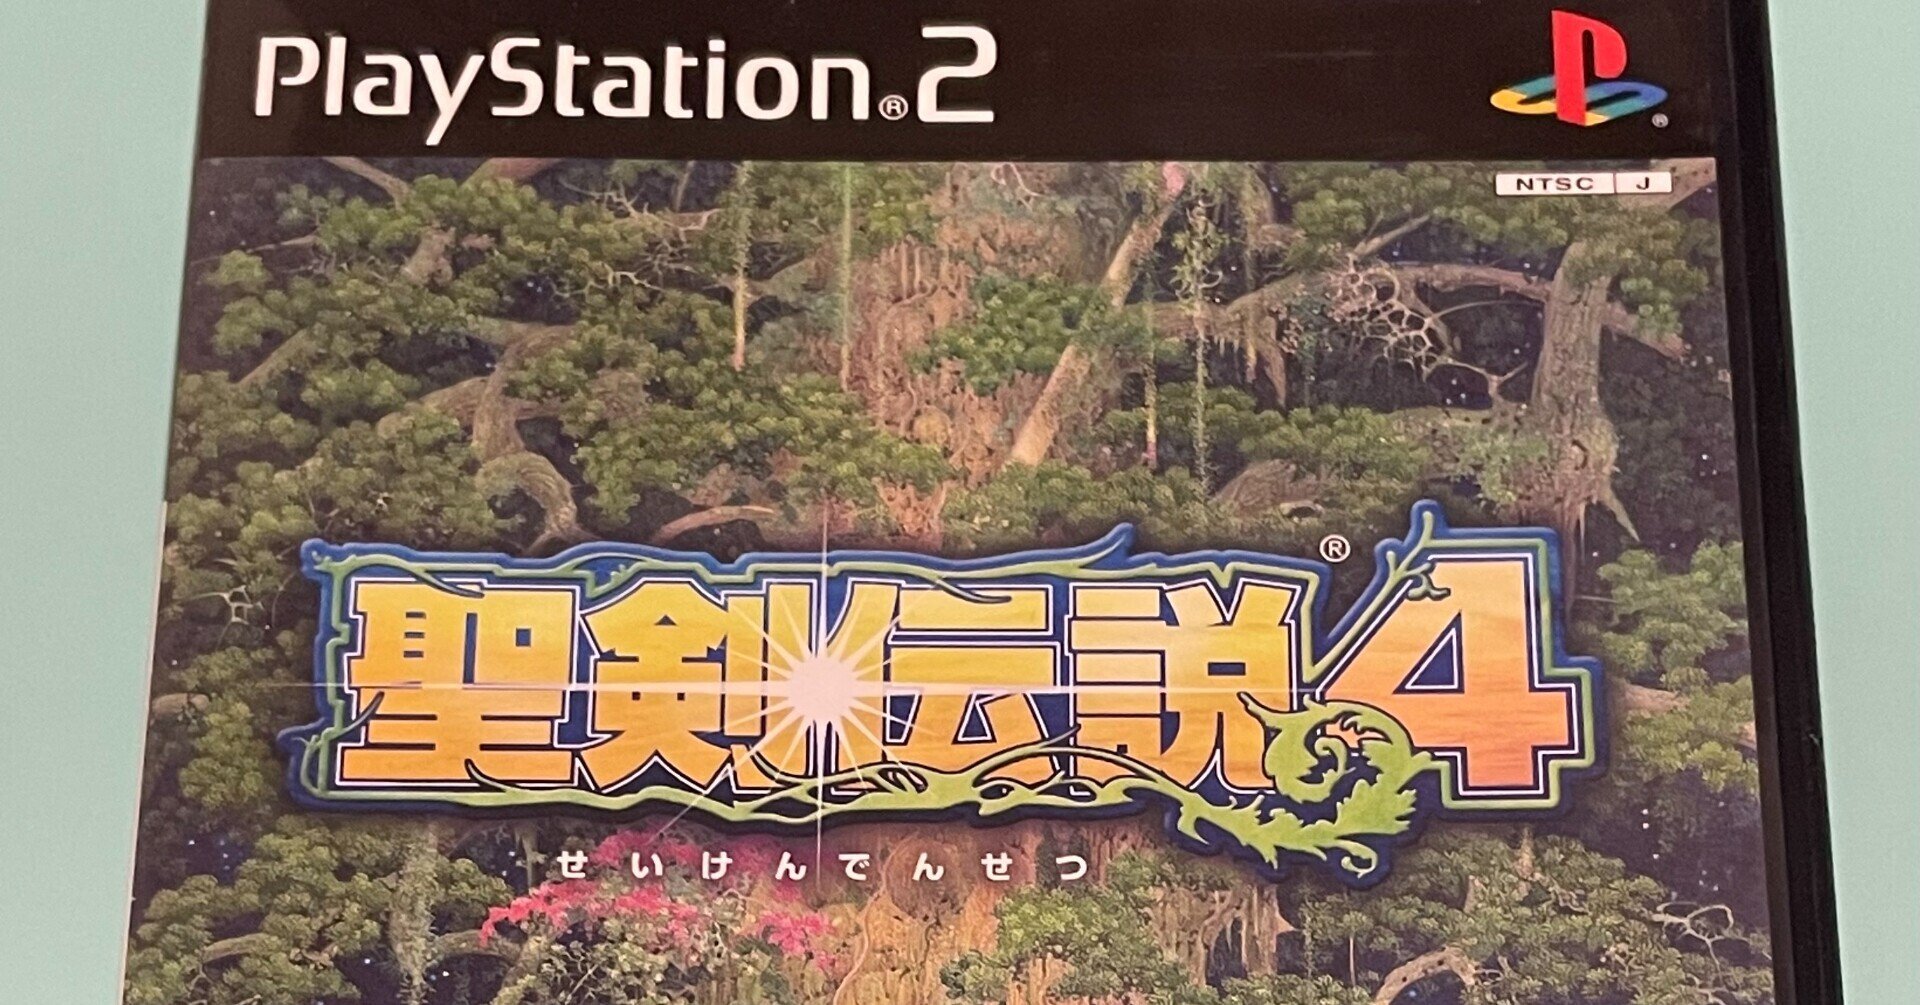 聖剣伝説4 PS2